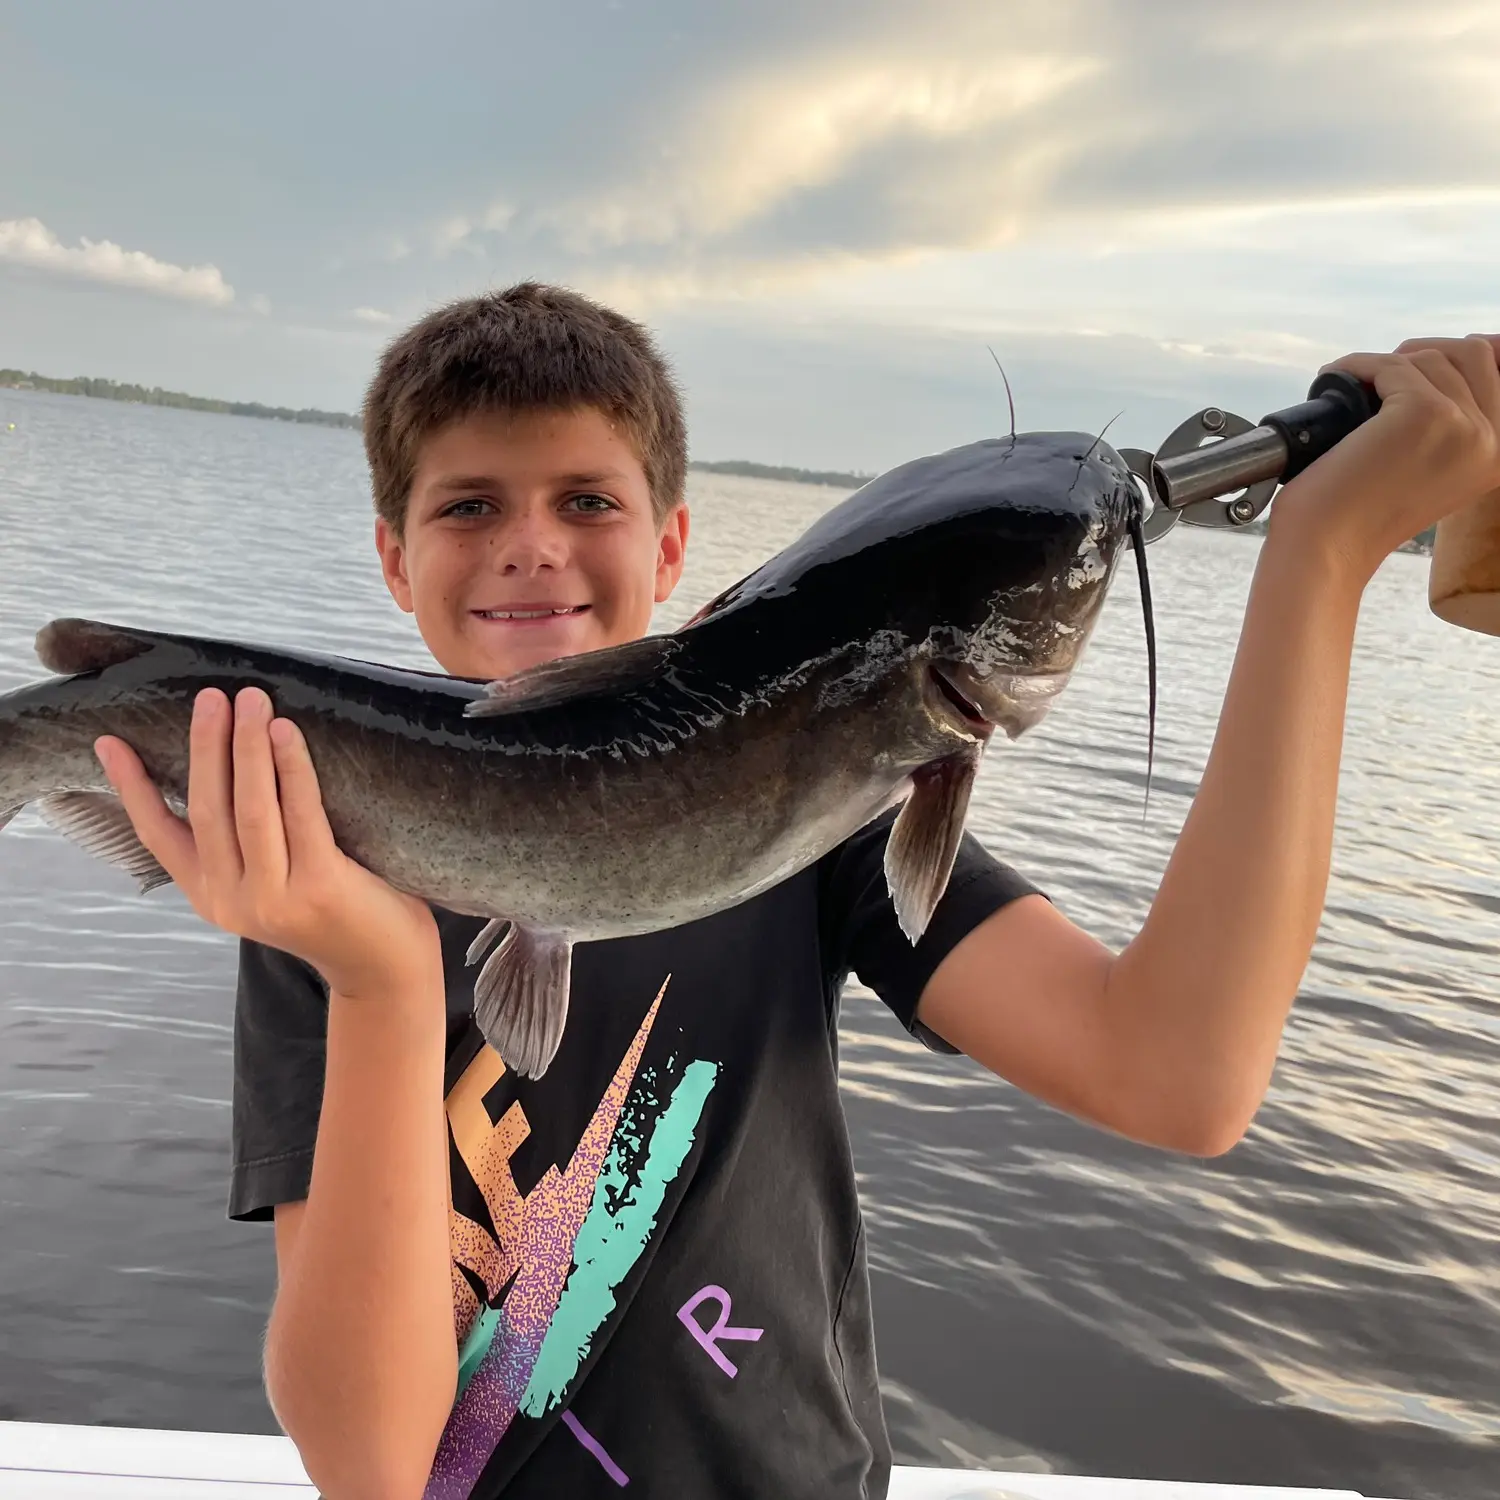 Doctor fish. Florida, USA : r/Fishing